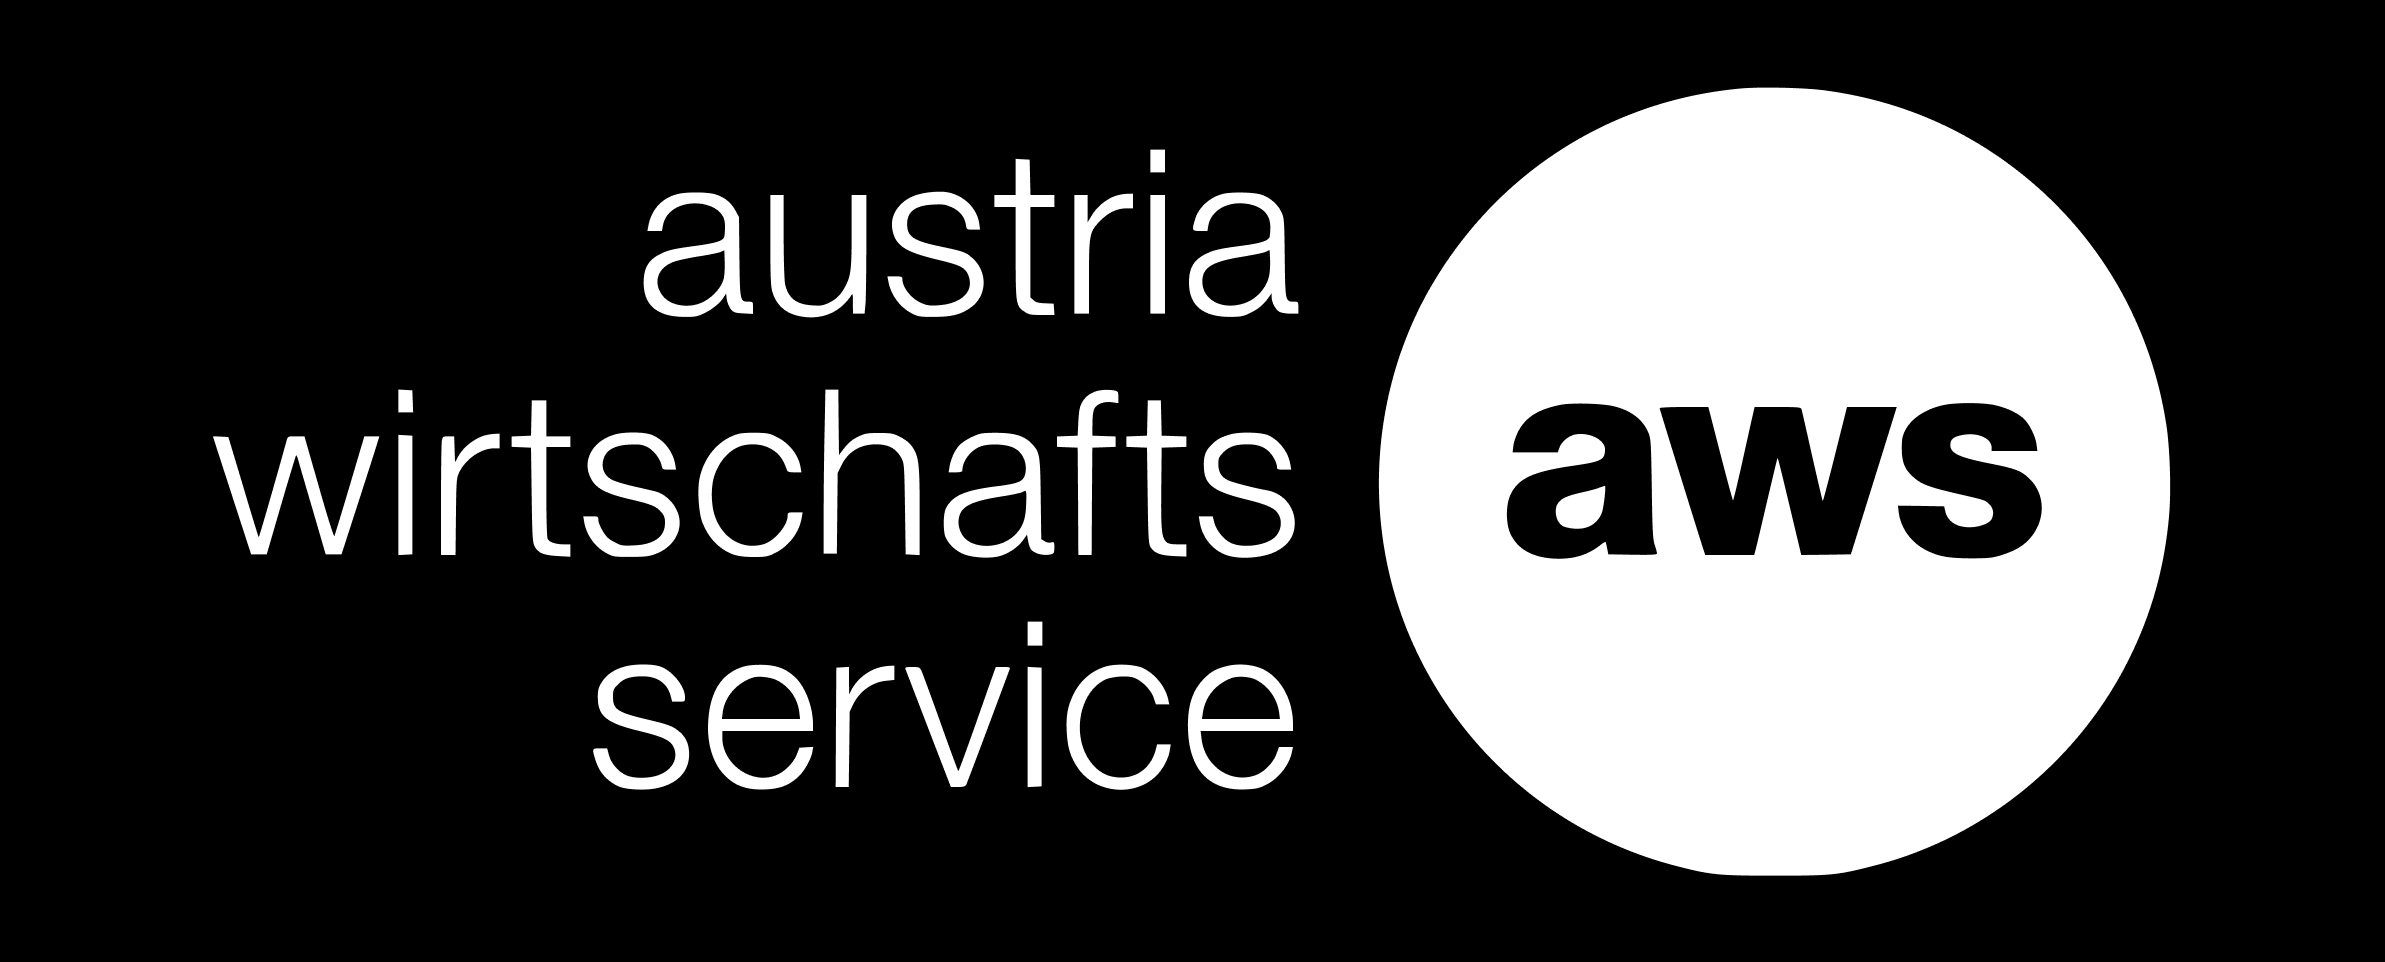 Austria wirtschafts service